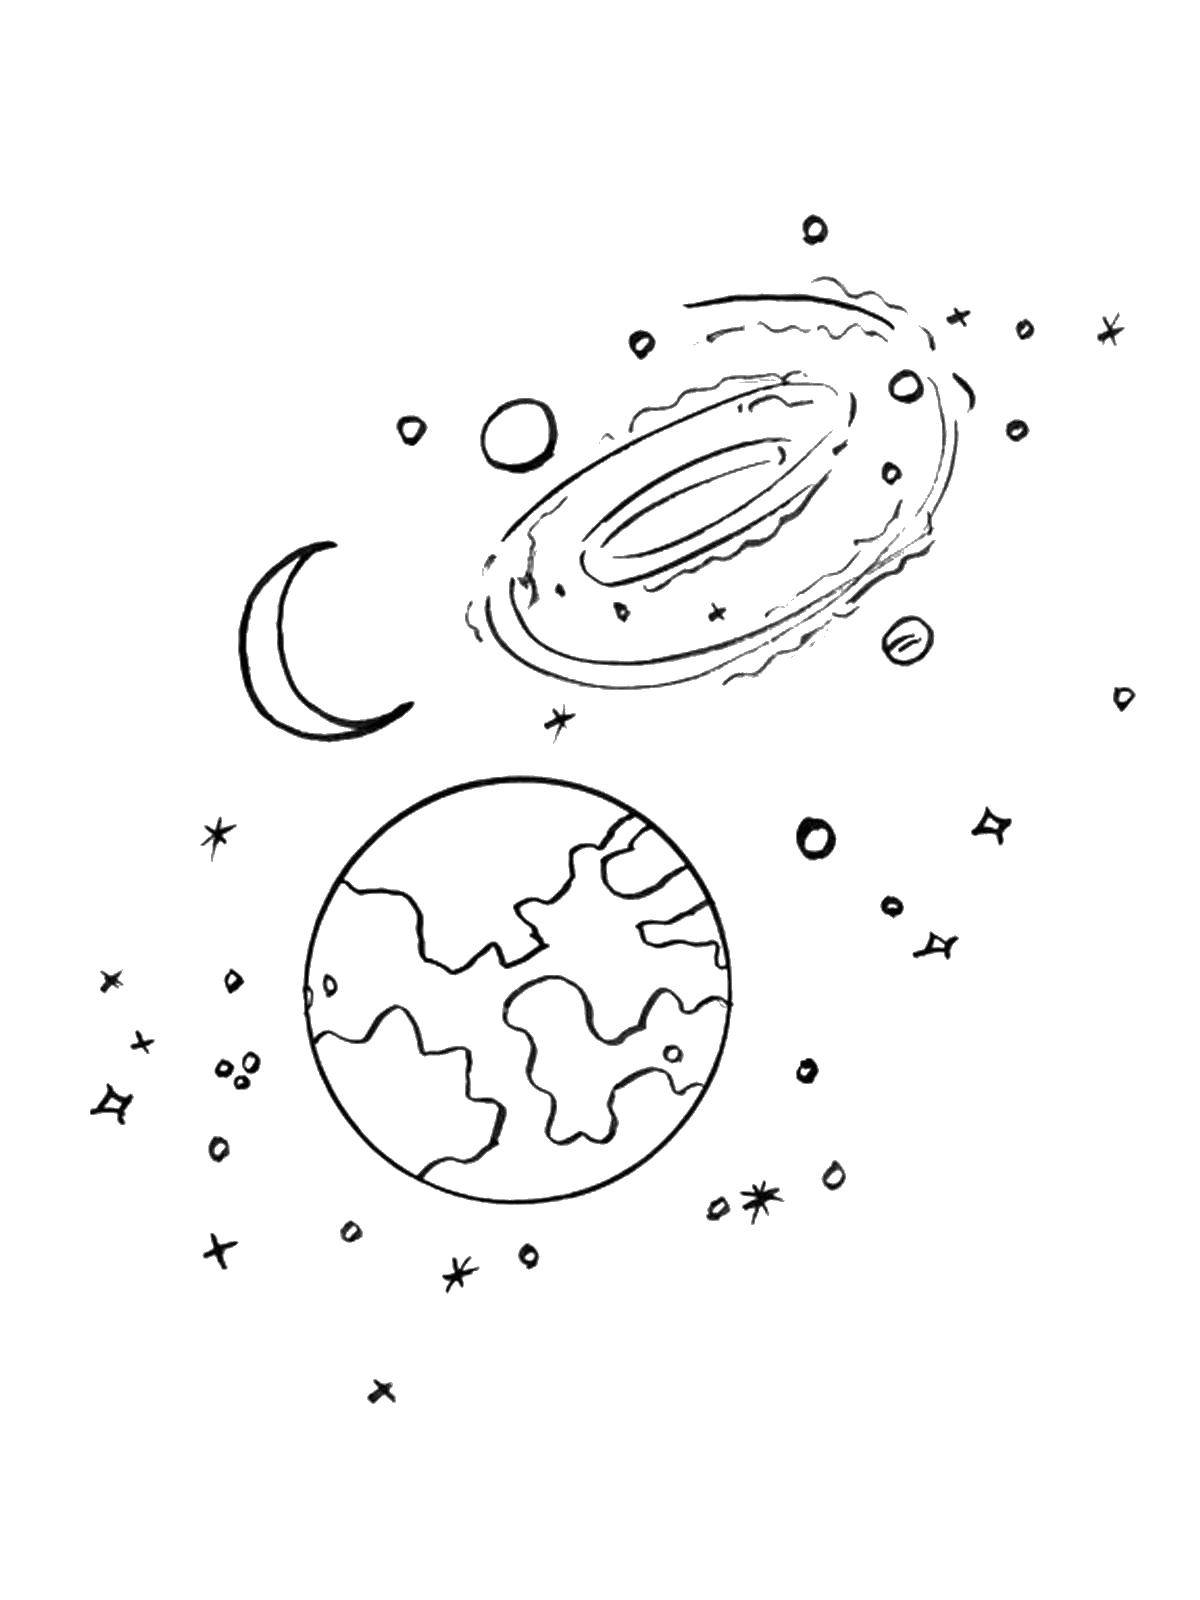 Название: Раскраска Наша планета земля и луна во вселеннной. Категория: космос. Теги: Космок, планета, Вселенная, Галактика, полумесяц, Луна, звезды.